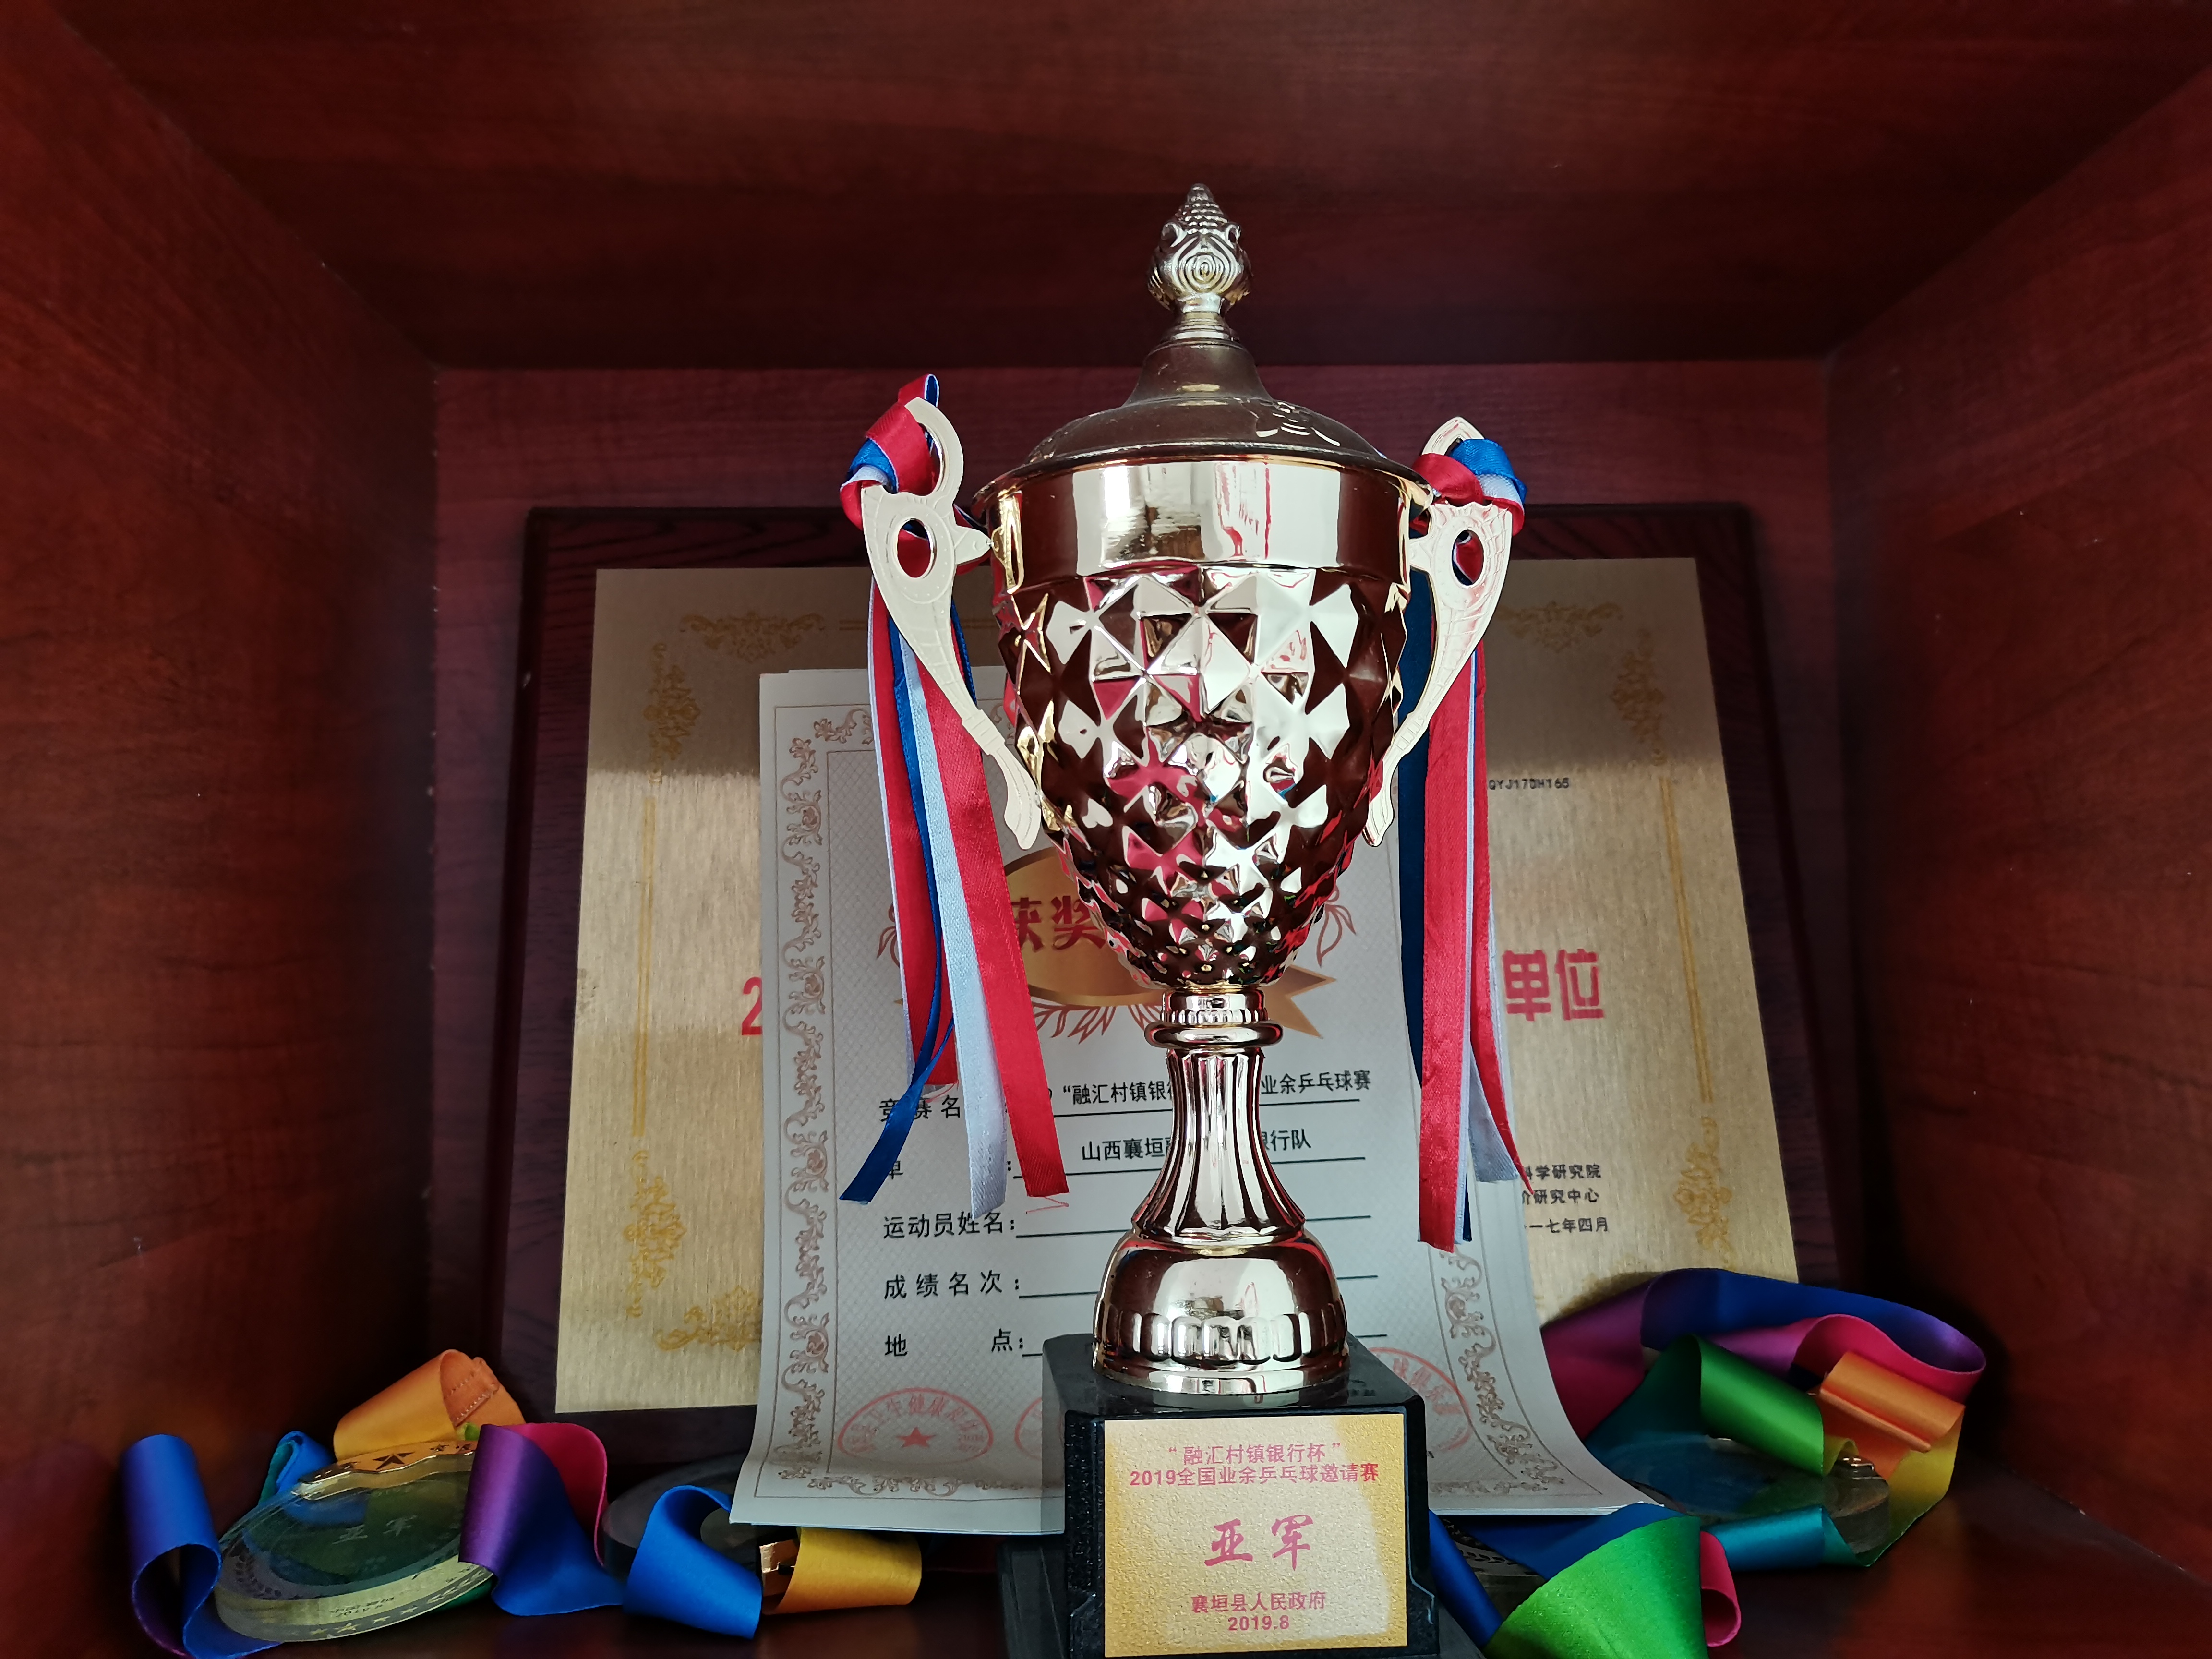 2019年8月 荣获“融汇村镇银行杯”2019全国业余乒乓球邀请赛亚军